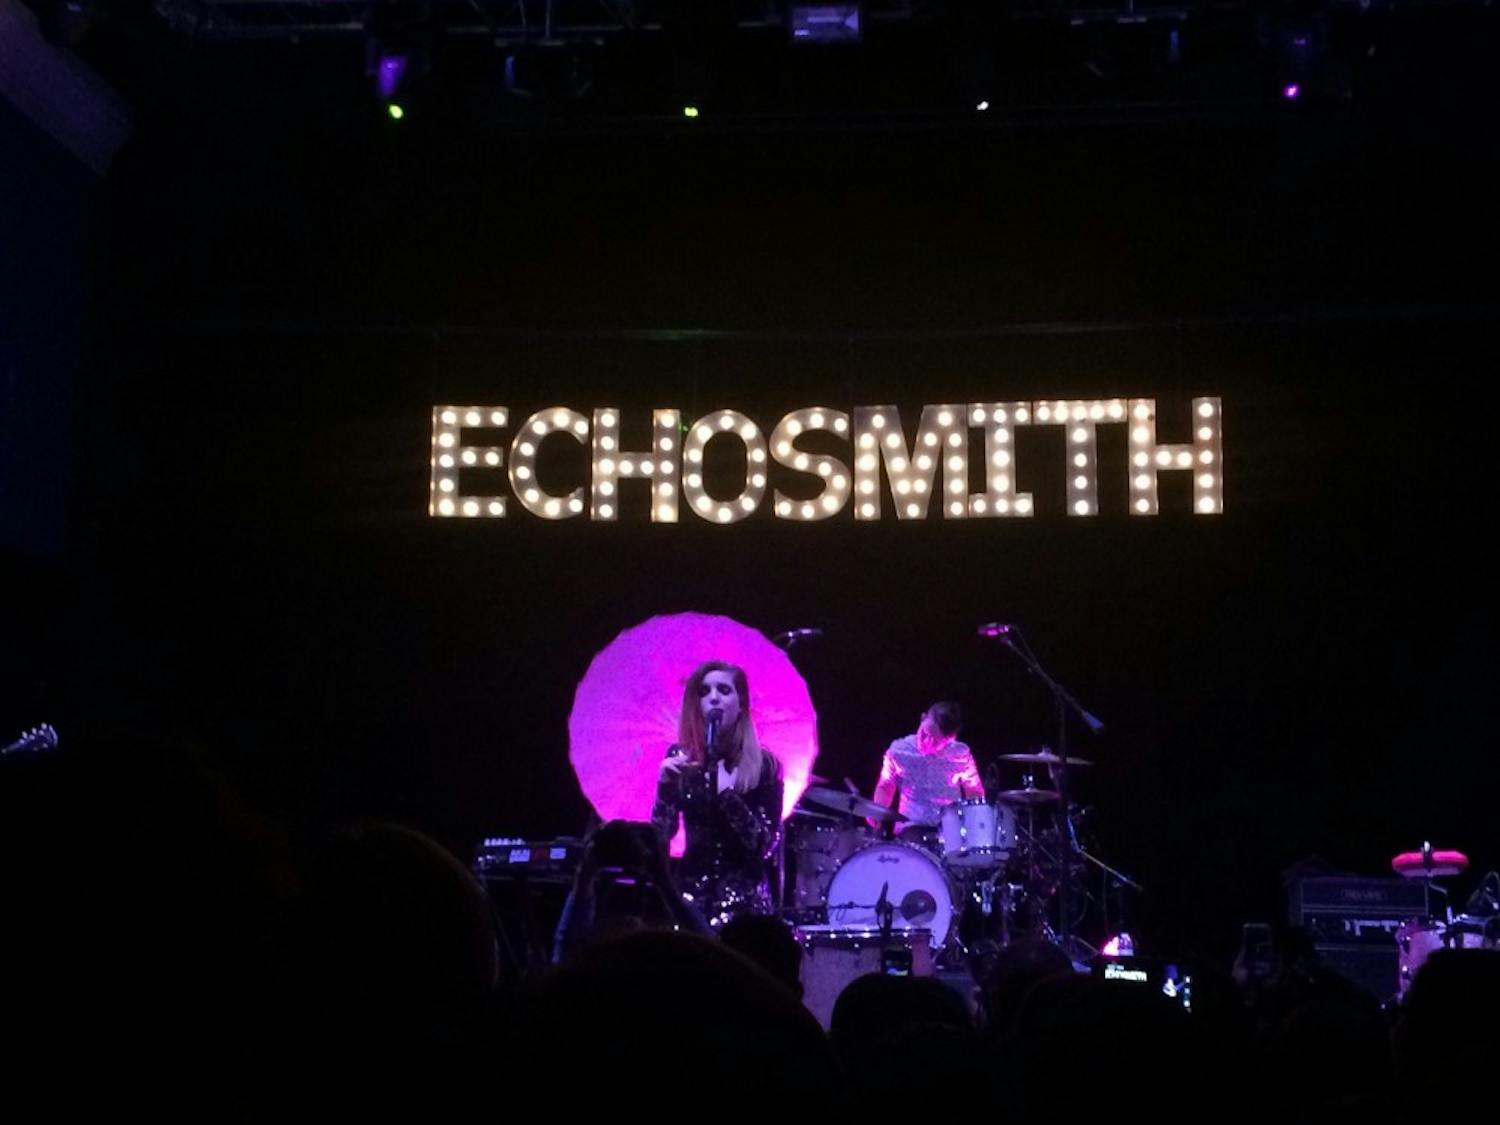 Echosmith Review